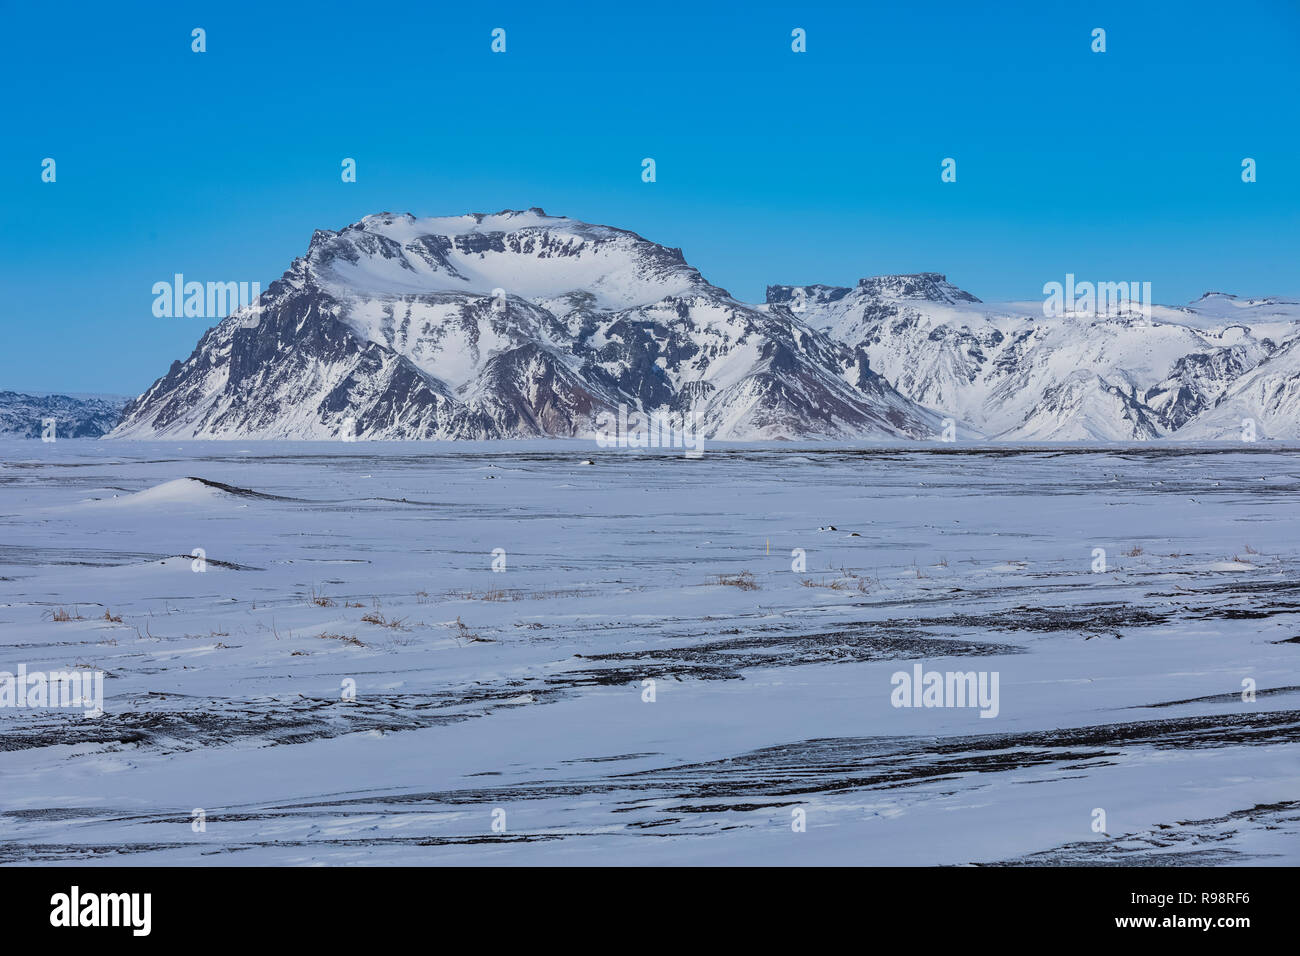 Mýrdalssandur Sander in der Nähe der Gletscher Myrdalsjökull mit Hafursey Berg, wo ein Teil der Rogue: ein Star Wars Geschichte wurde gefilmt, Island, in Wint Stockfoto